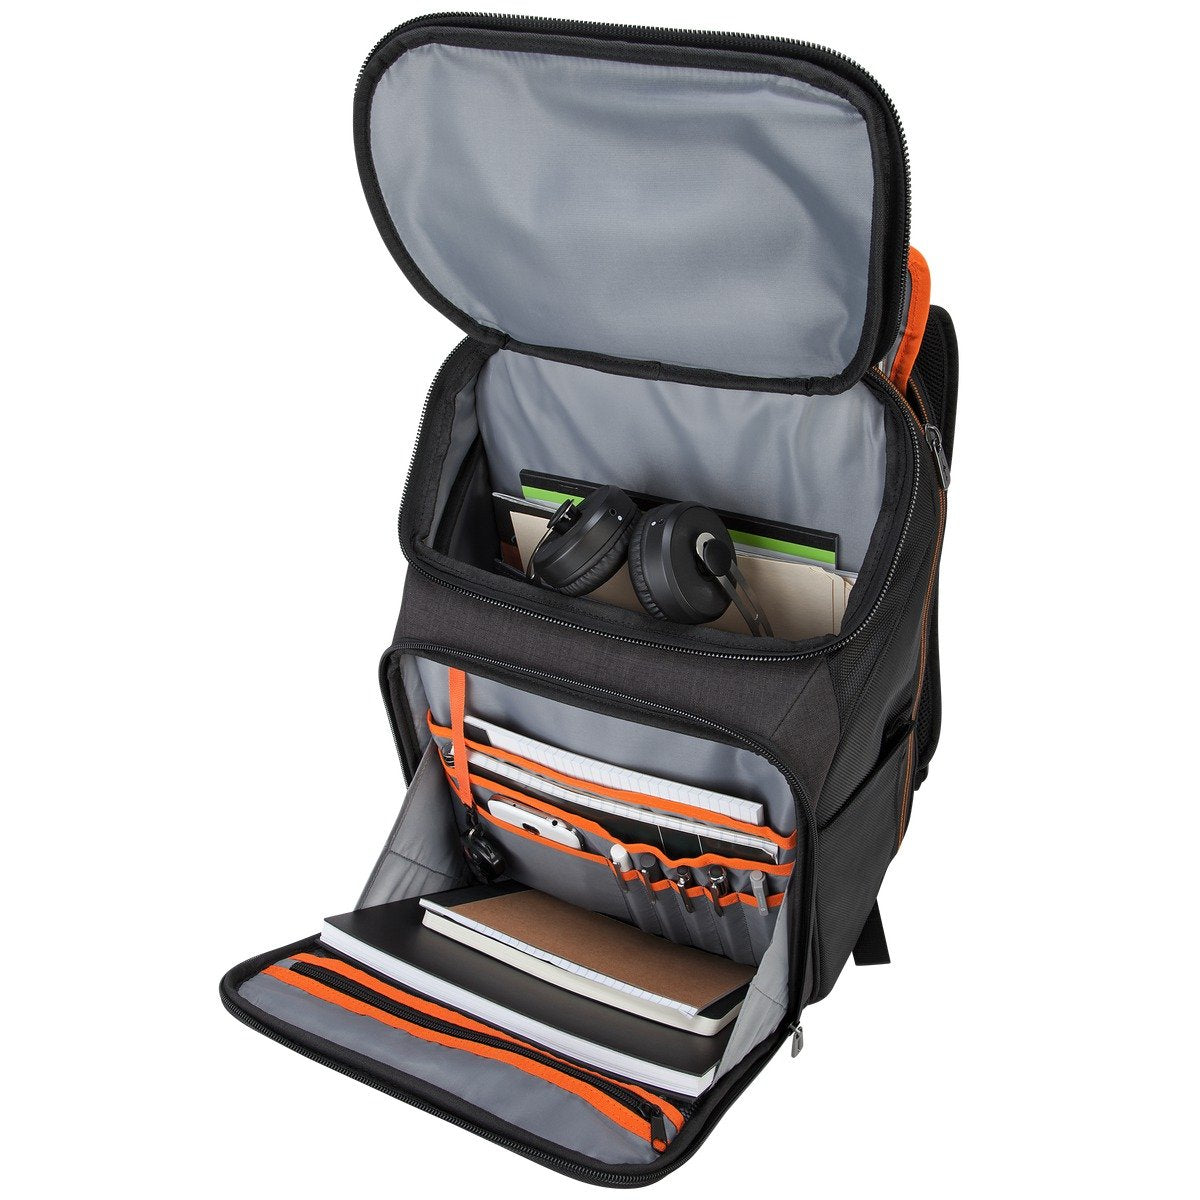 Targus Citysmart Eva Pro Checkpoint-Friendly Backpack for 15.6" Laptop, Black (TSB895) - yrGear Australia